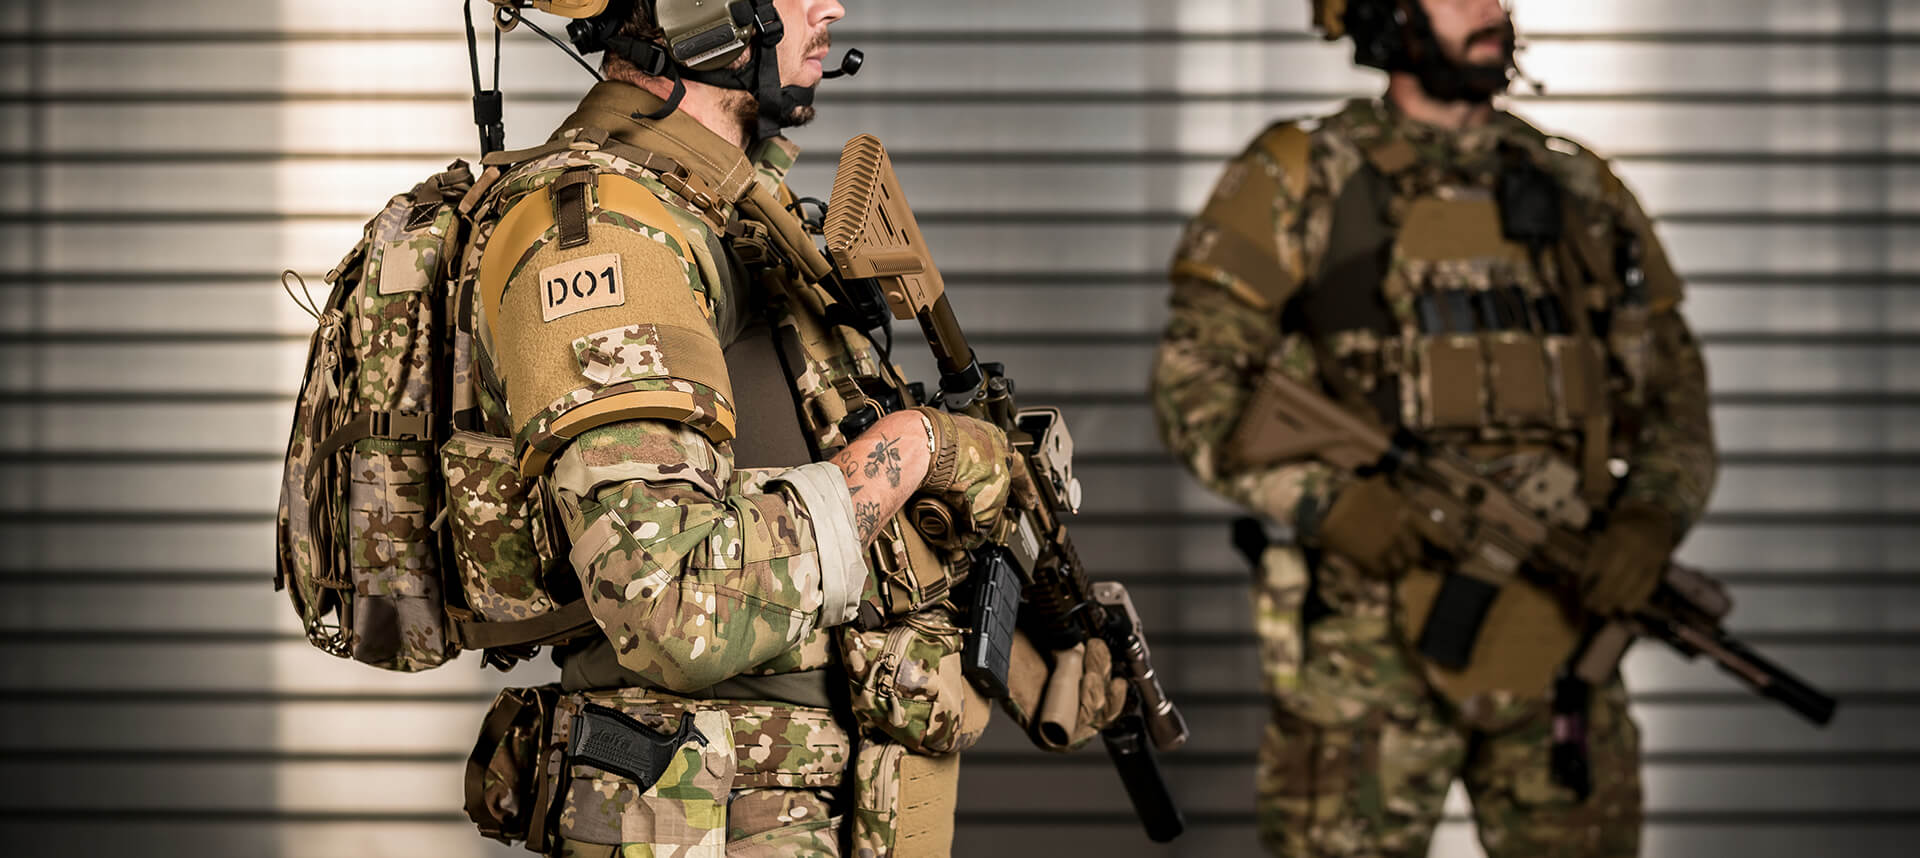 Die Rolle von ballistischen Tests und Bedrohungsanalysen für die Sicherheit von Einsatzkräften